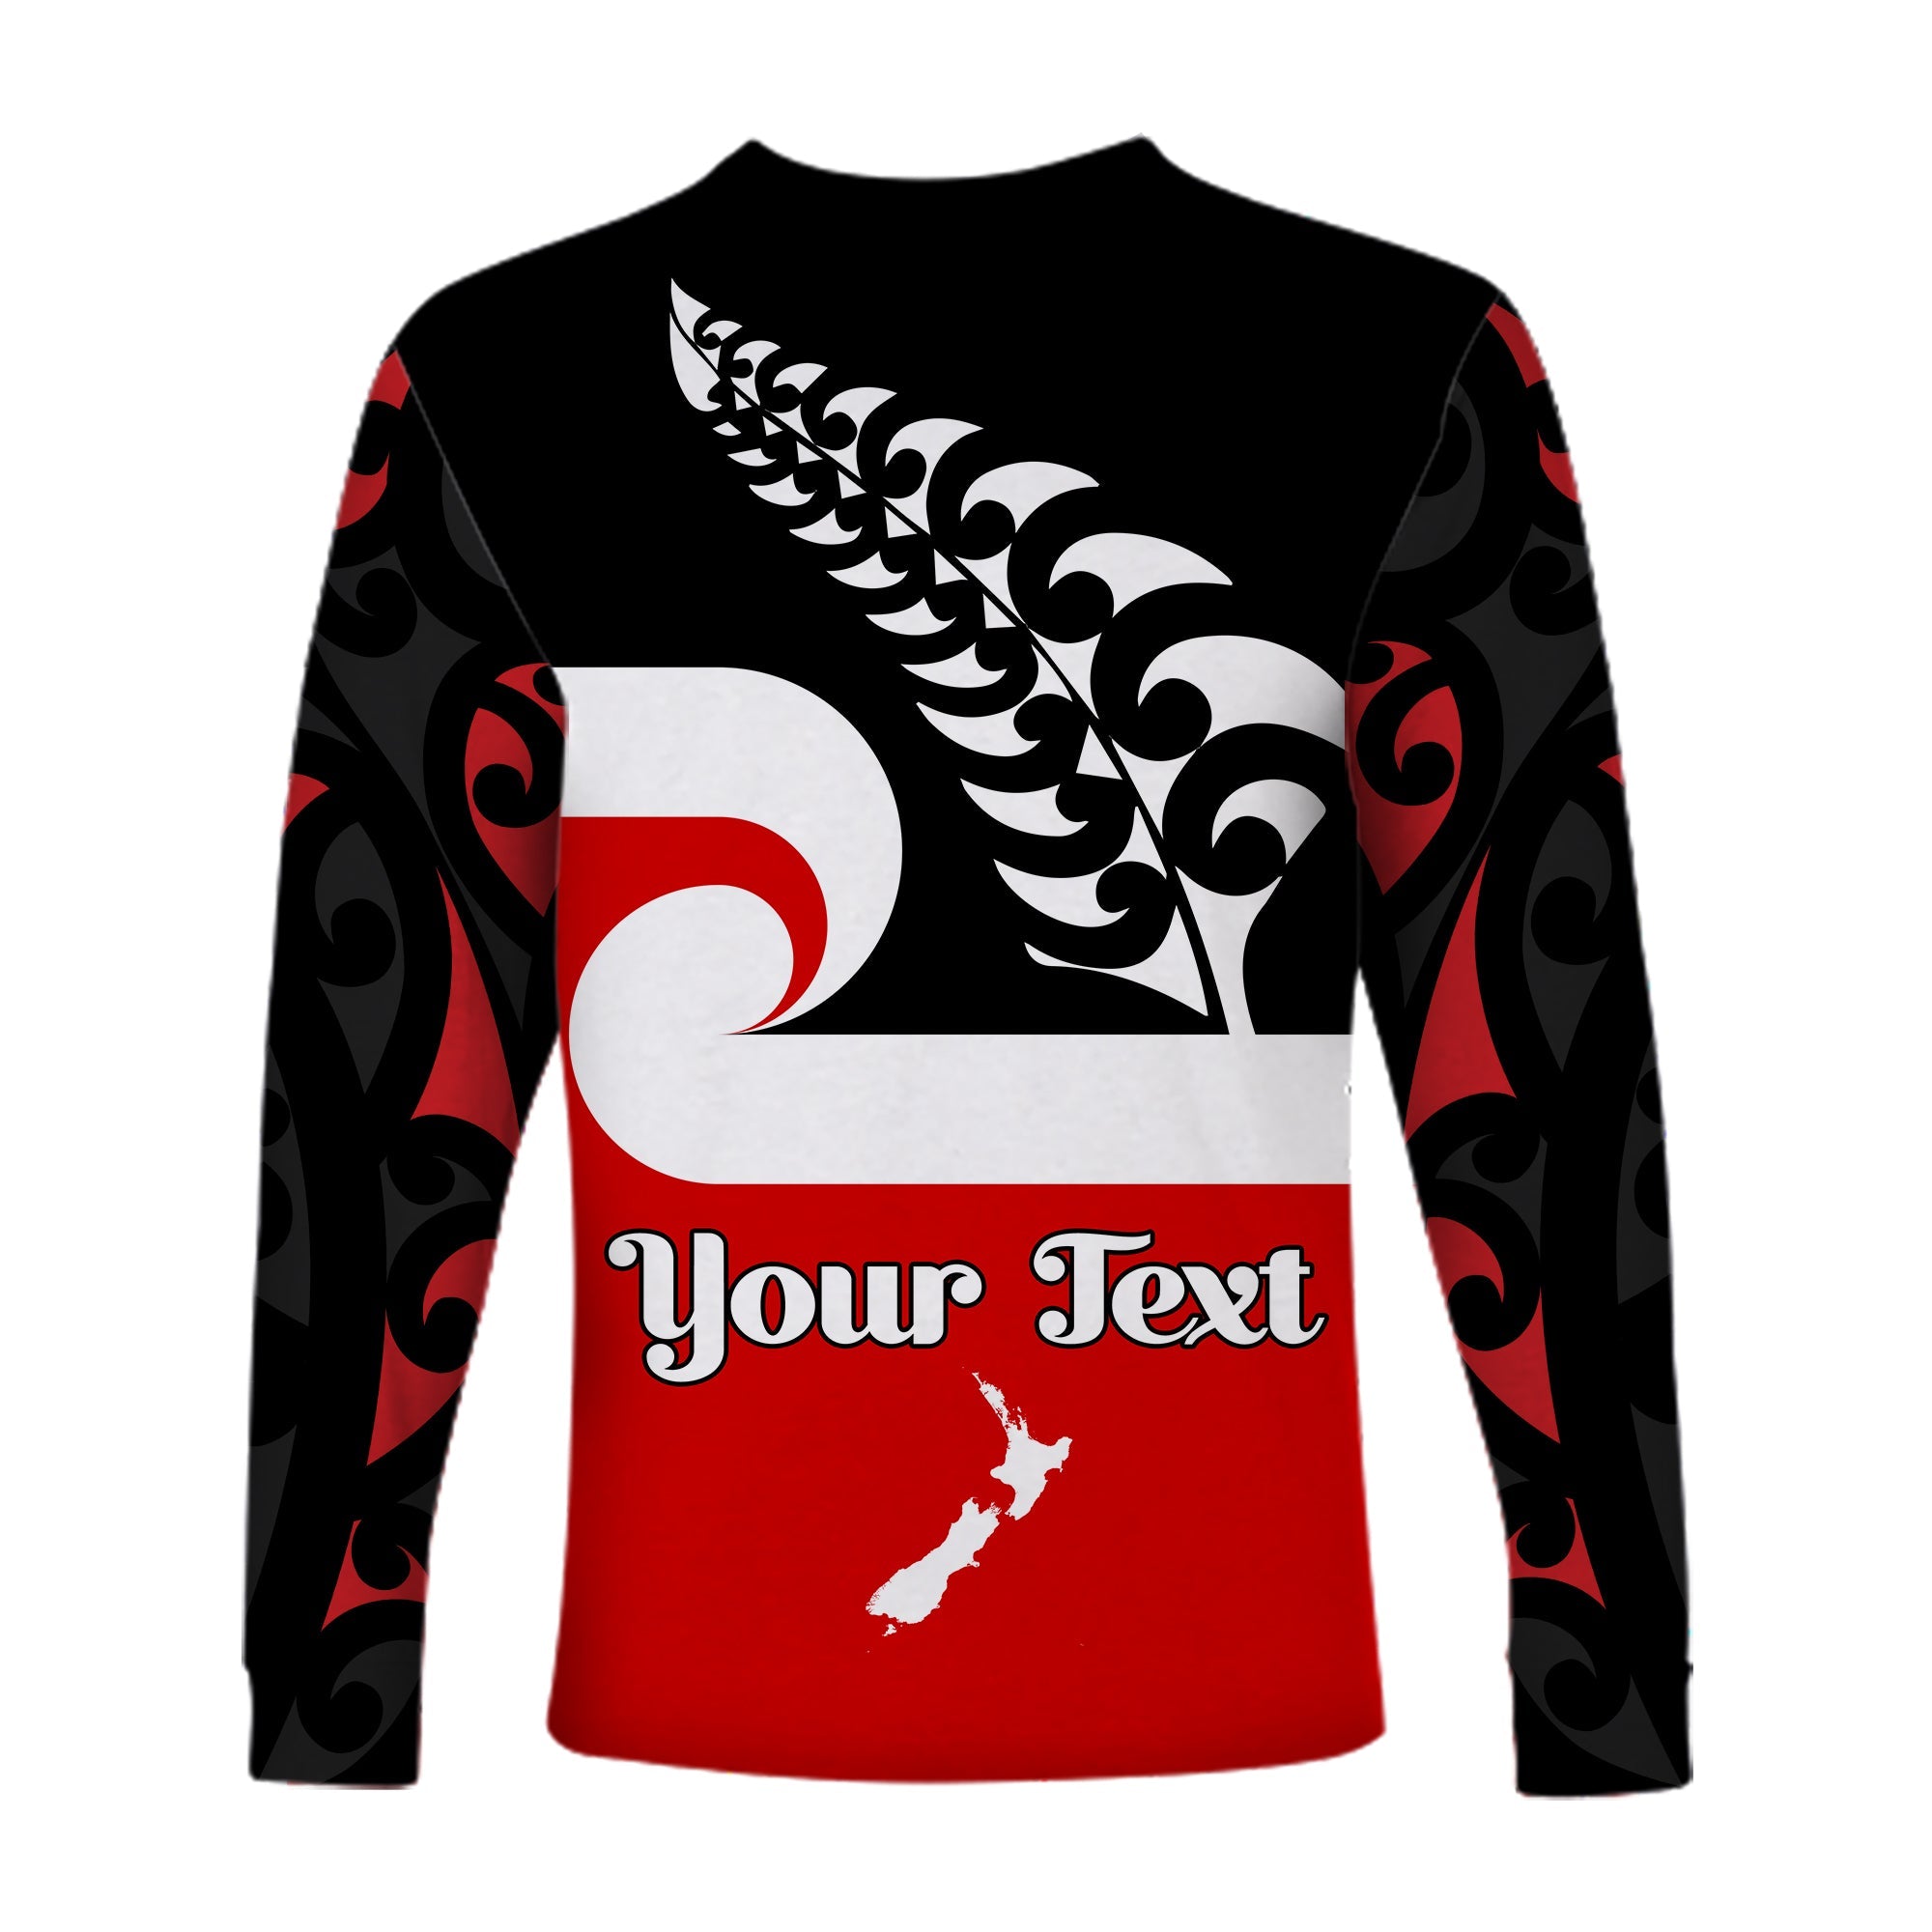 custom-personalised-waitangi-day-long-sleeve-shirt-maori-fern-and-tino-rangatiratanga-flag-lt13